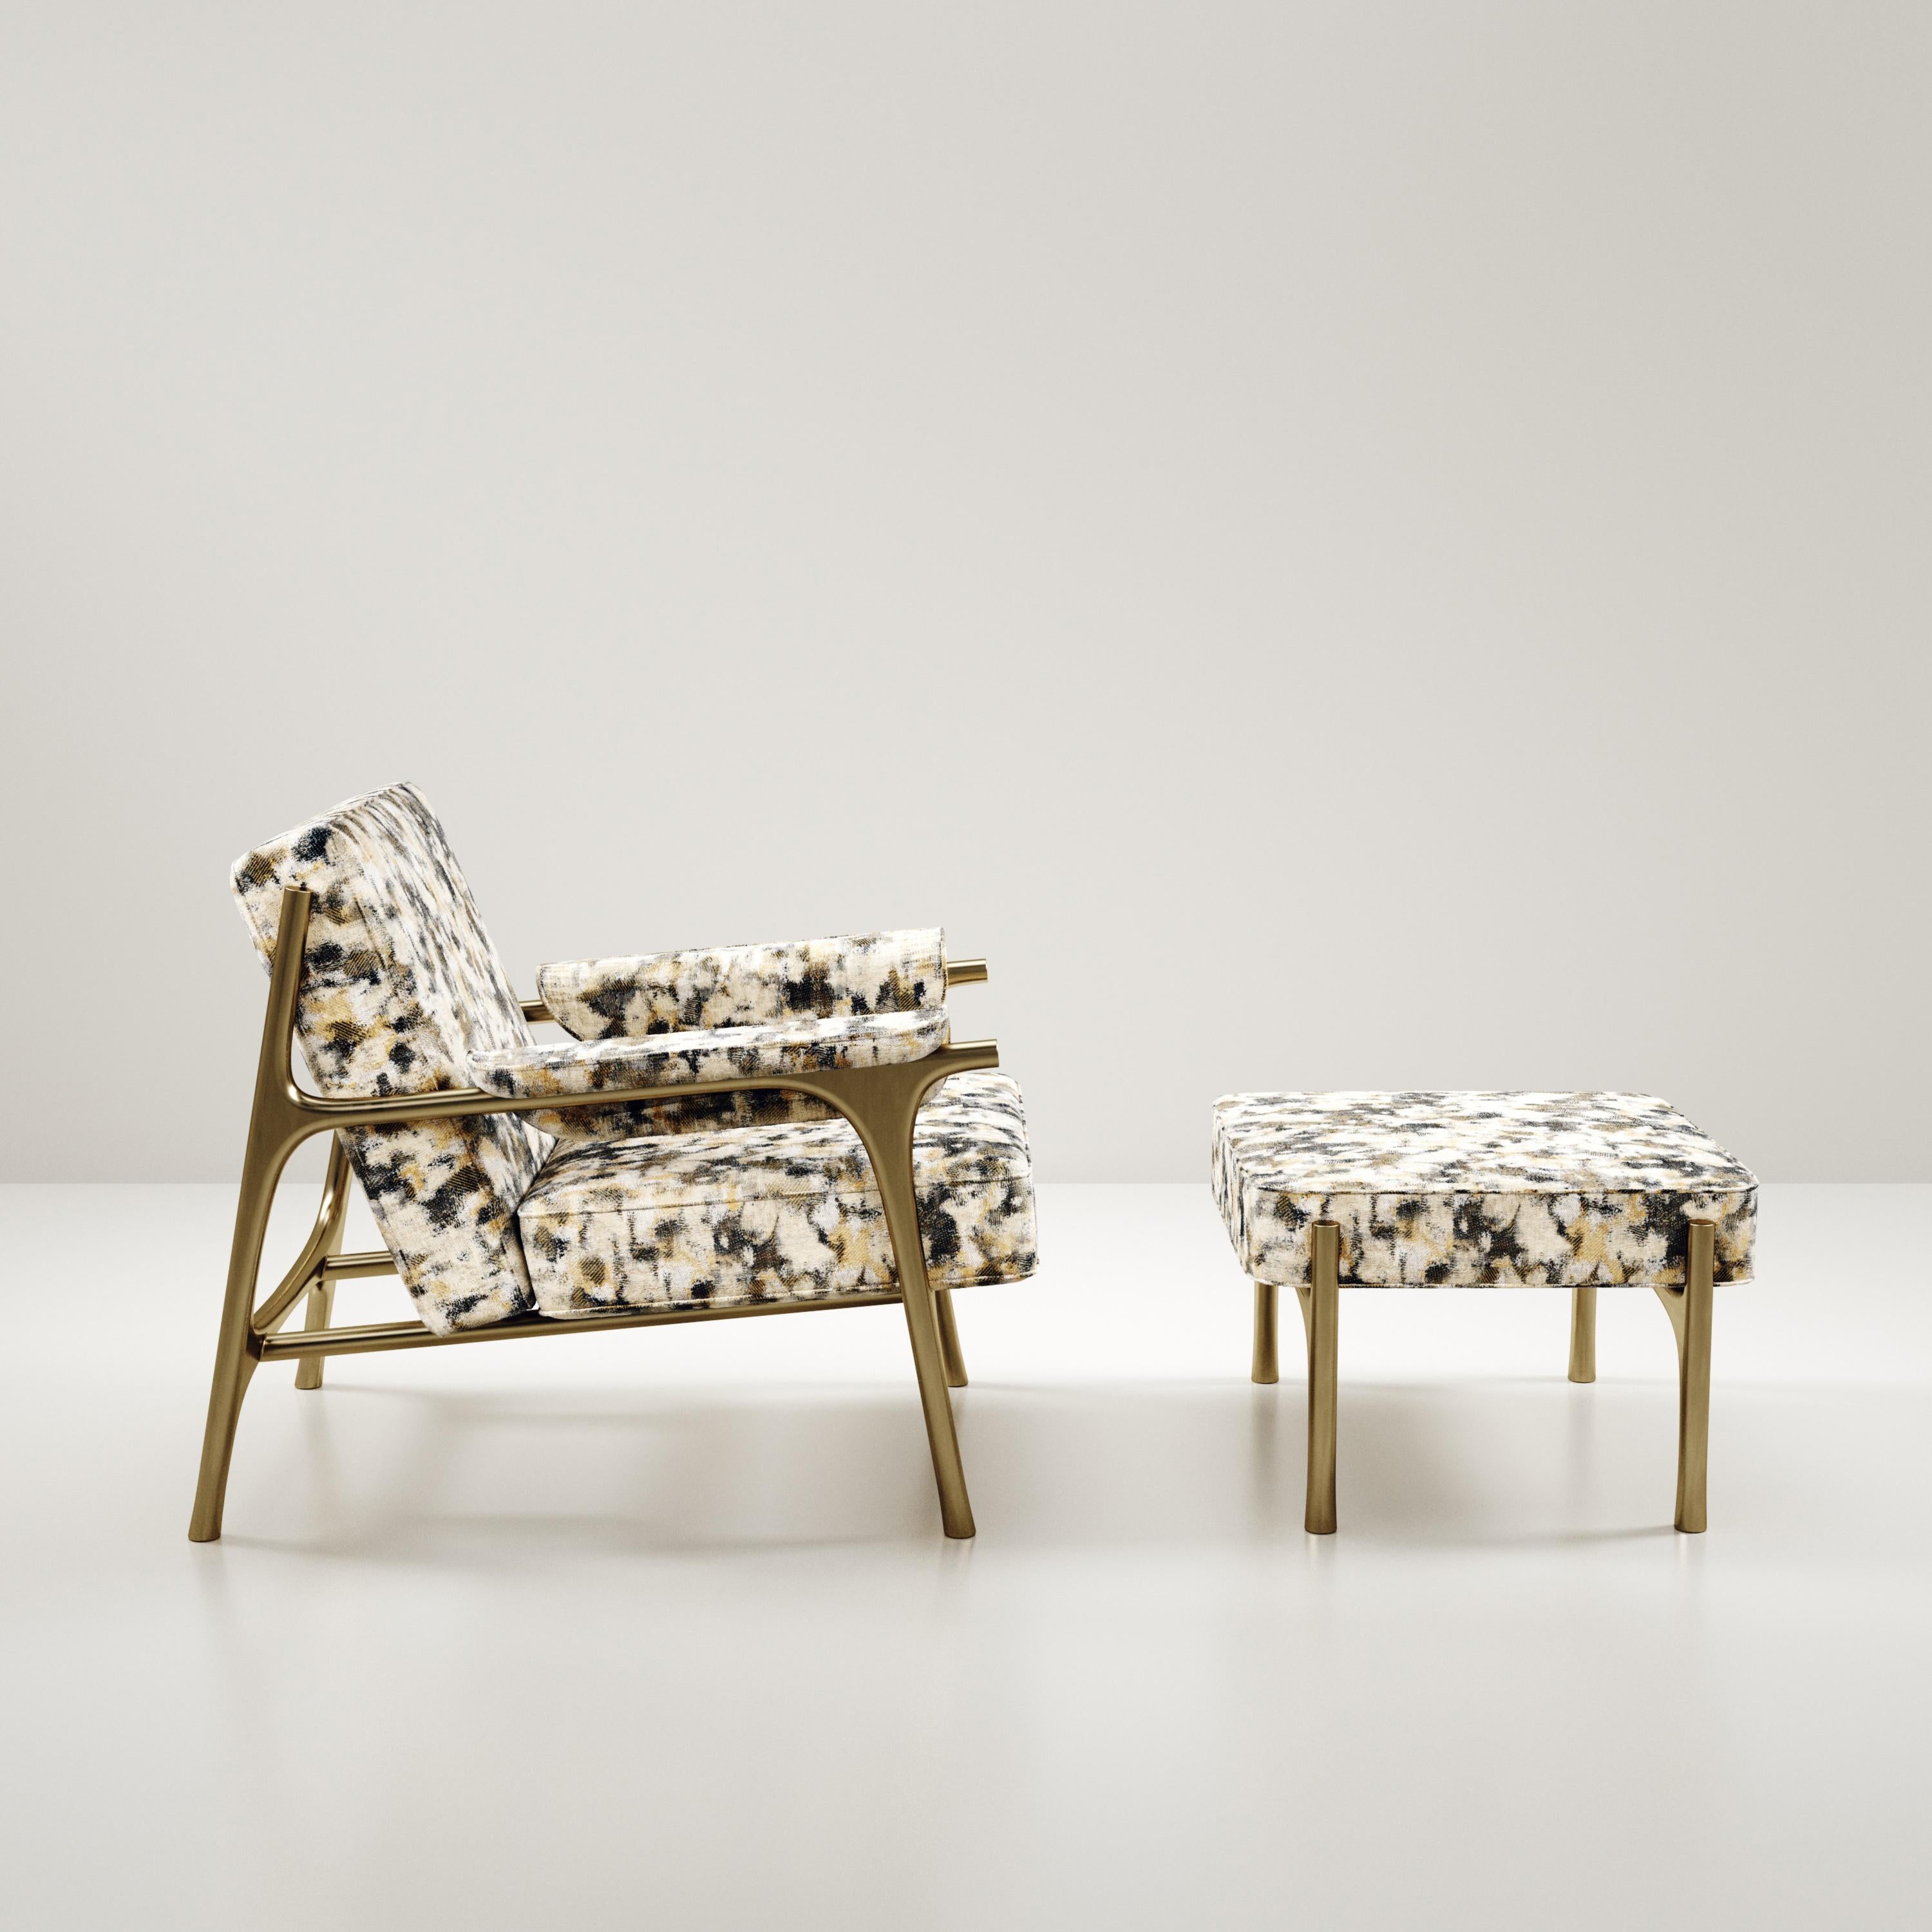 Das Ramo Armchair & Footstool Set von R & Y Augousti ist ein elegantes und vielseitiges Möbelstück. Die Polstermöbel aus camouflagefarbenem Pierre-Frey-Stoff bieten Komfort und bewahren mit dem Gestell und den Details aus Messing in Bronze-Patina